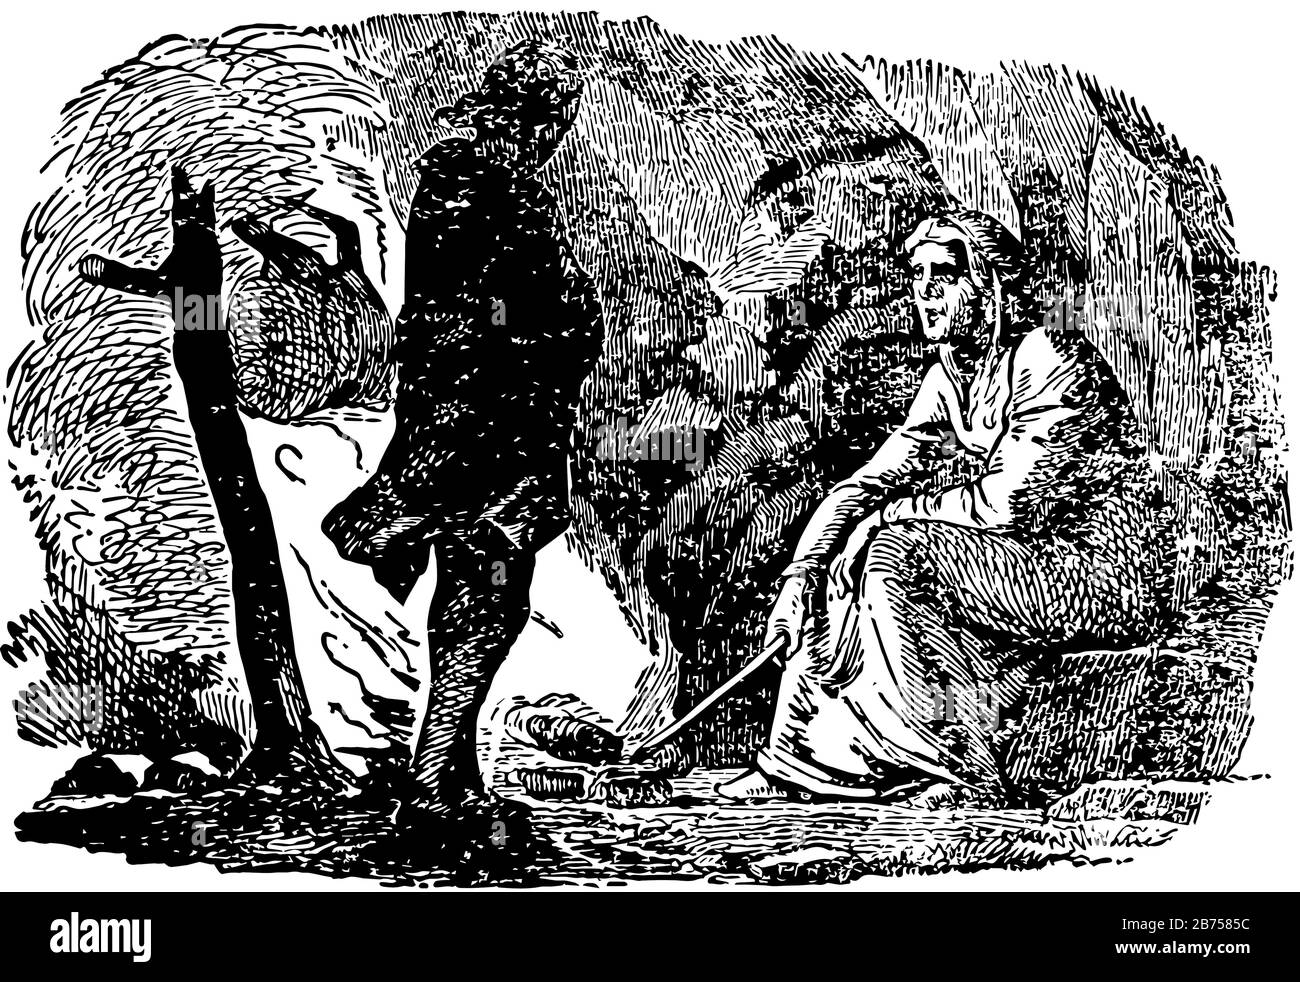 Il Giardino del Paradiso, questa scena mostra due uomini stanno parlando, un uomo è seduto e un altro uomo è in piedi accanto a lui, linea vintage disegno o Engr Illustrazione Vettoriale